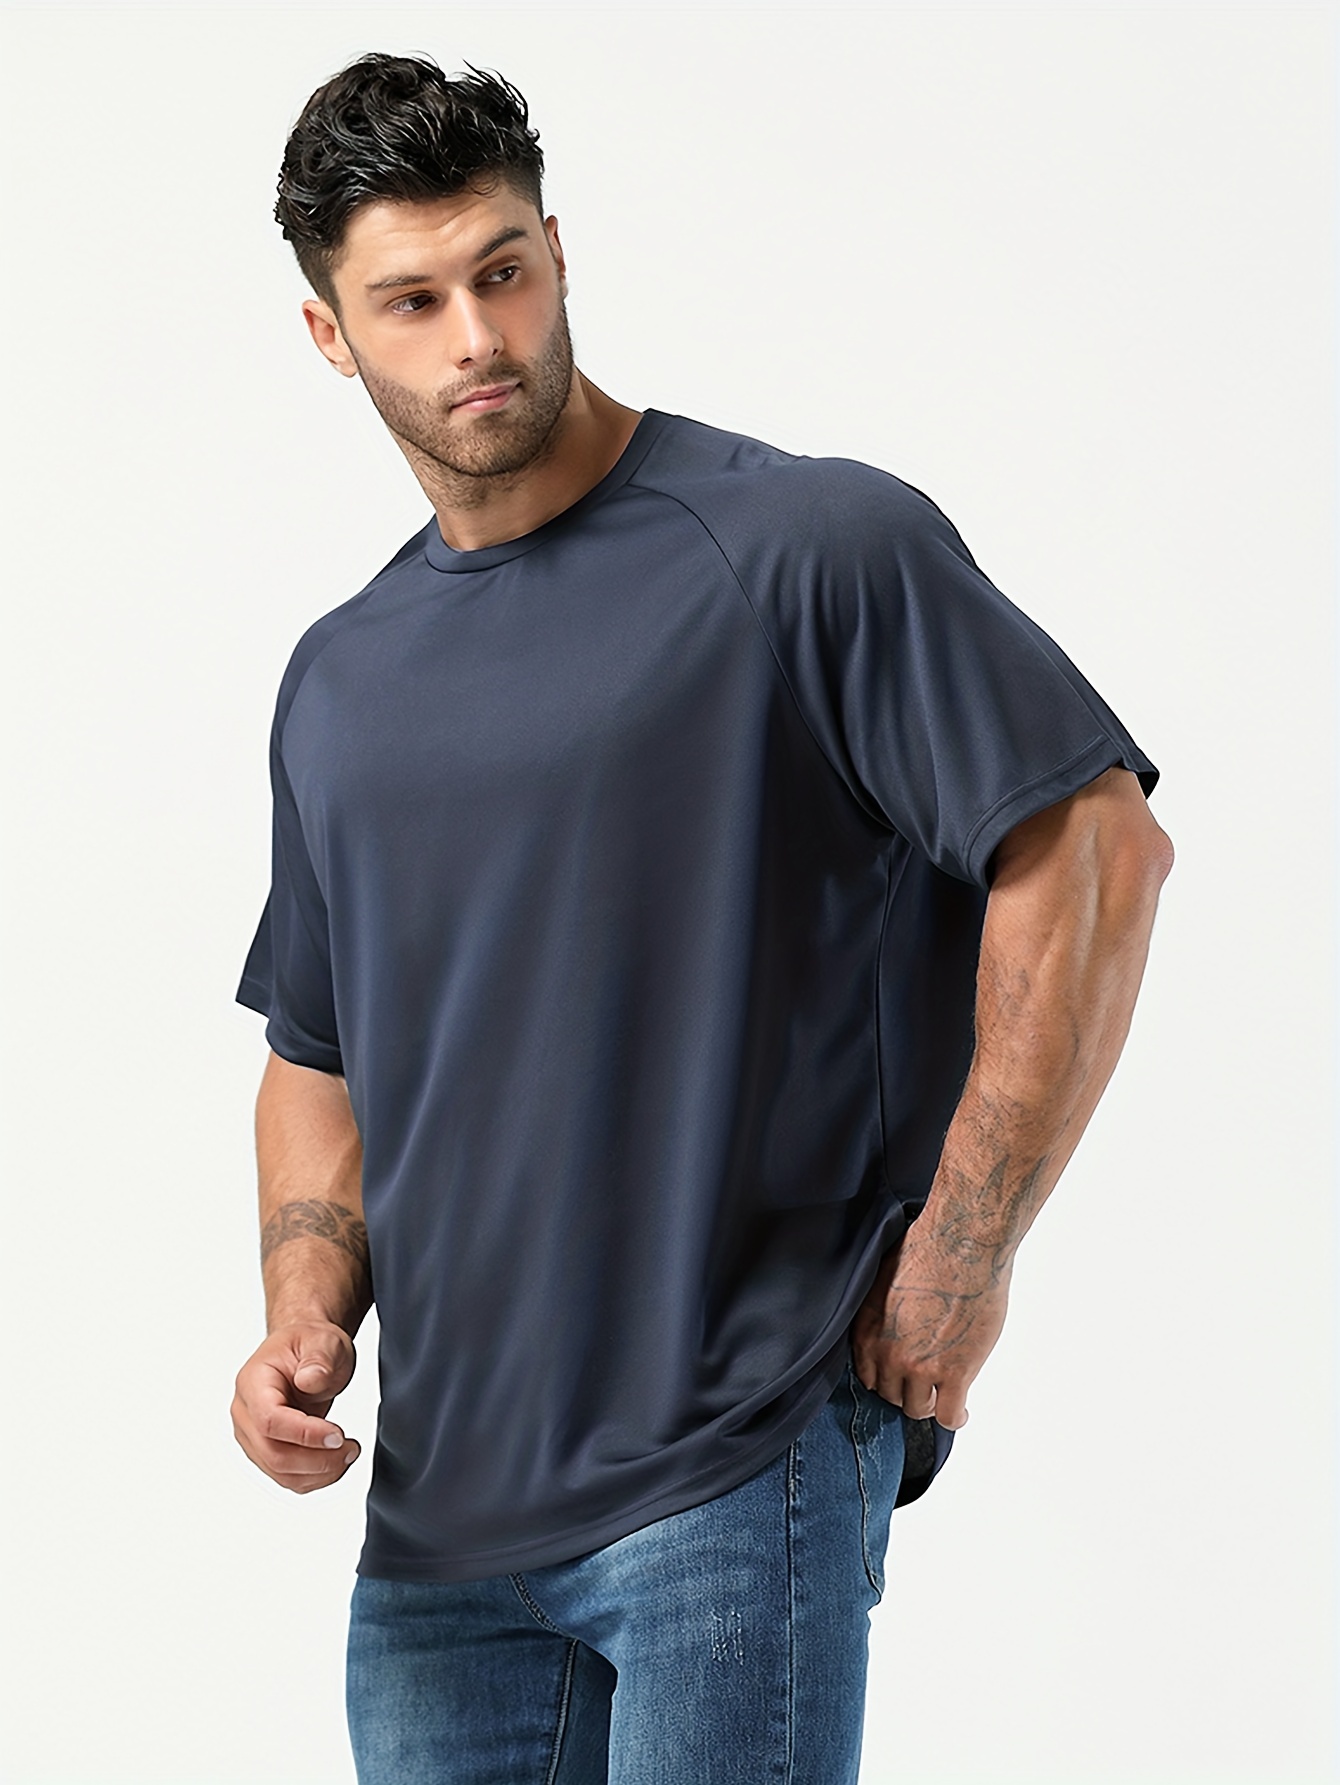 Camiseta básica para hombre, de verano, delgada, sólida, suelta, talla  grande, cuello redondo, manga corta, camisetas deportivas para hombre